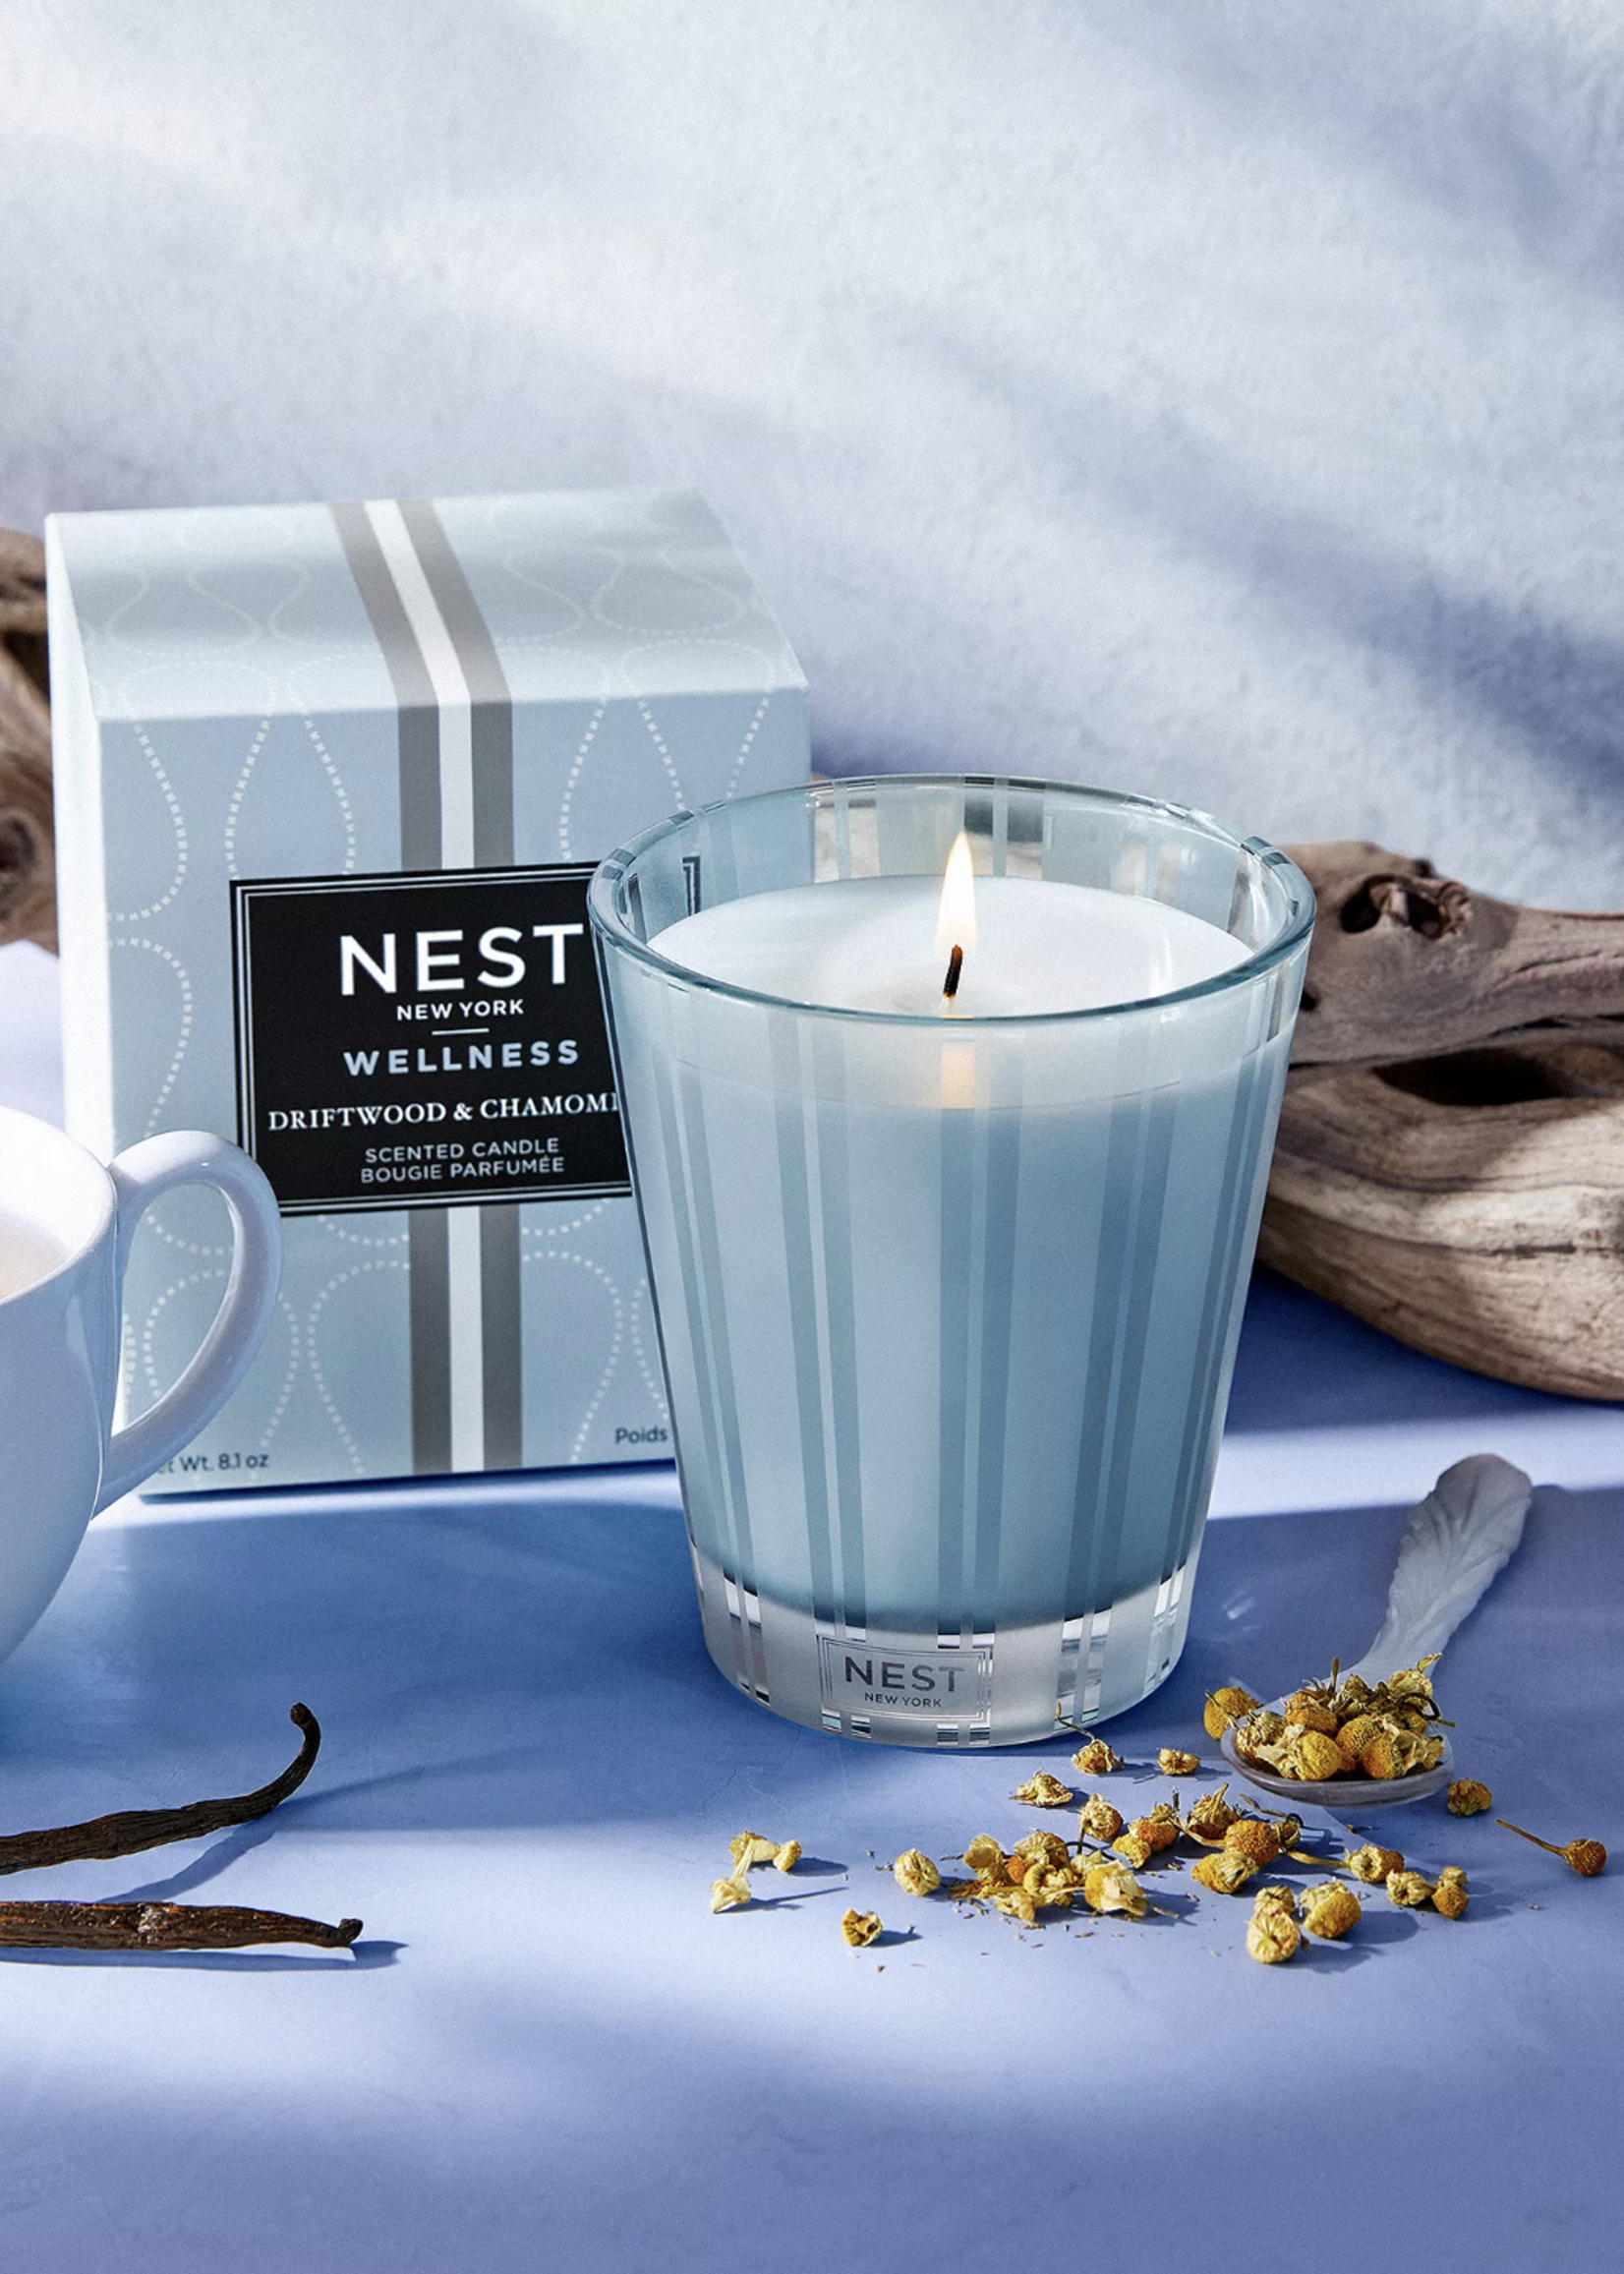 Nest Nest-Driftwood & Chamomile 8.1oz Candle